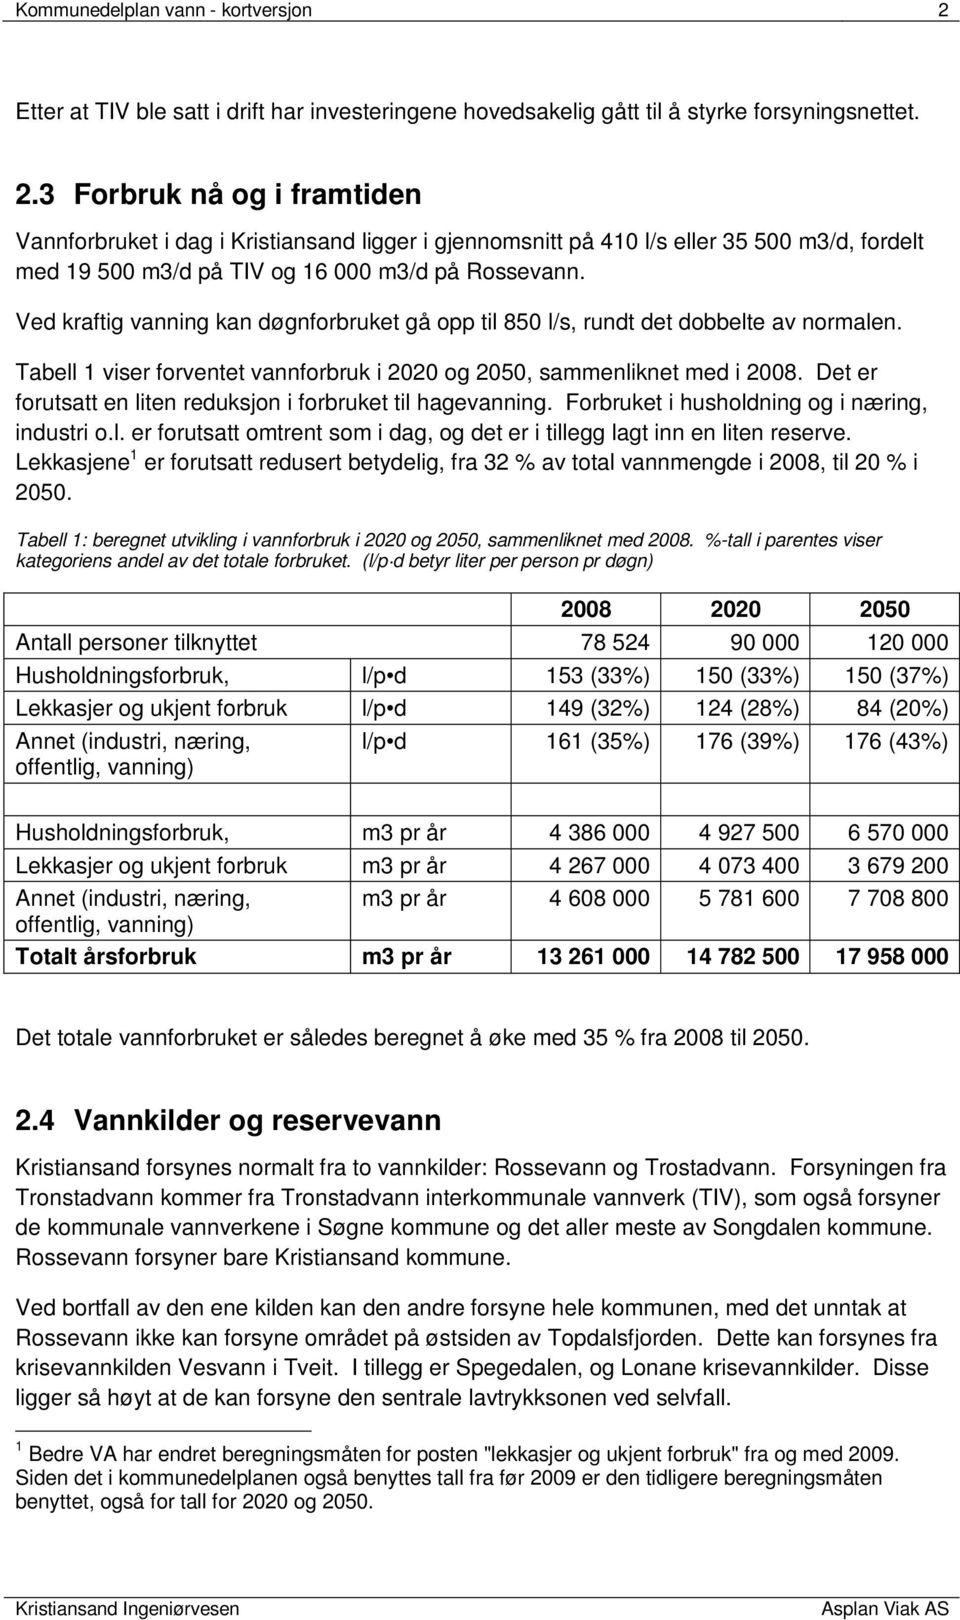 3 Forbruk nå og i framtiden Vannforbruket i dag i Kristiansand ligger i gjennomsnitt på 410 l/s eller 35 500 m3/d, fordelt med 19 500 m3/d på TIV og 16 000 m3/d på Rossevann.